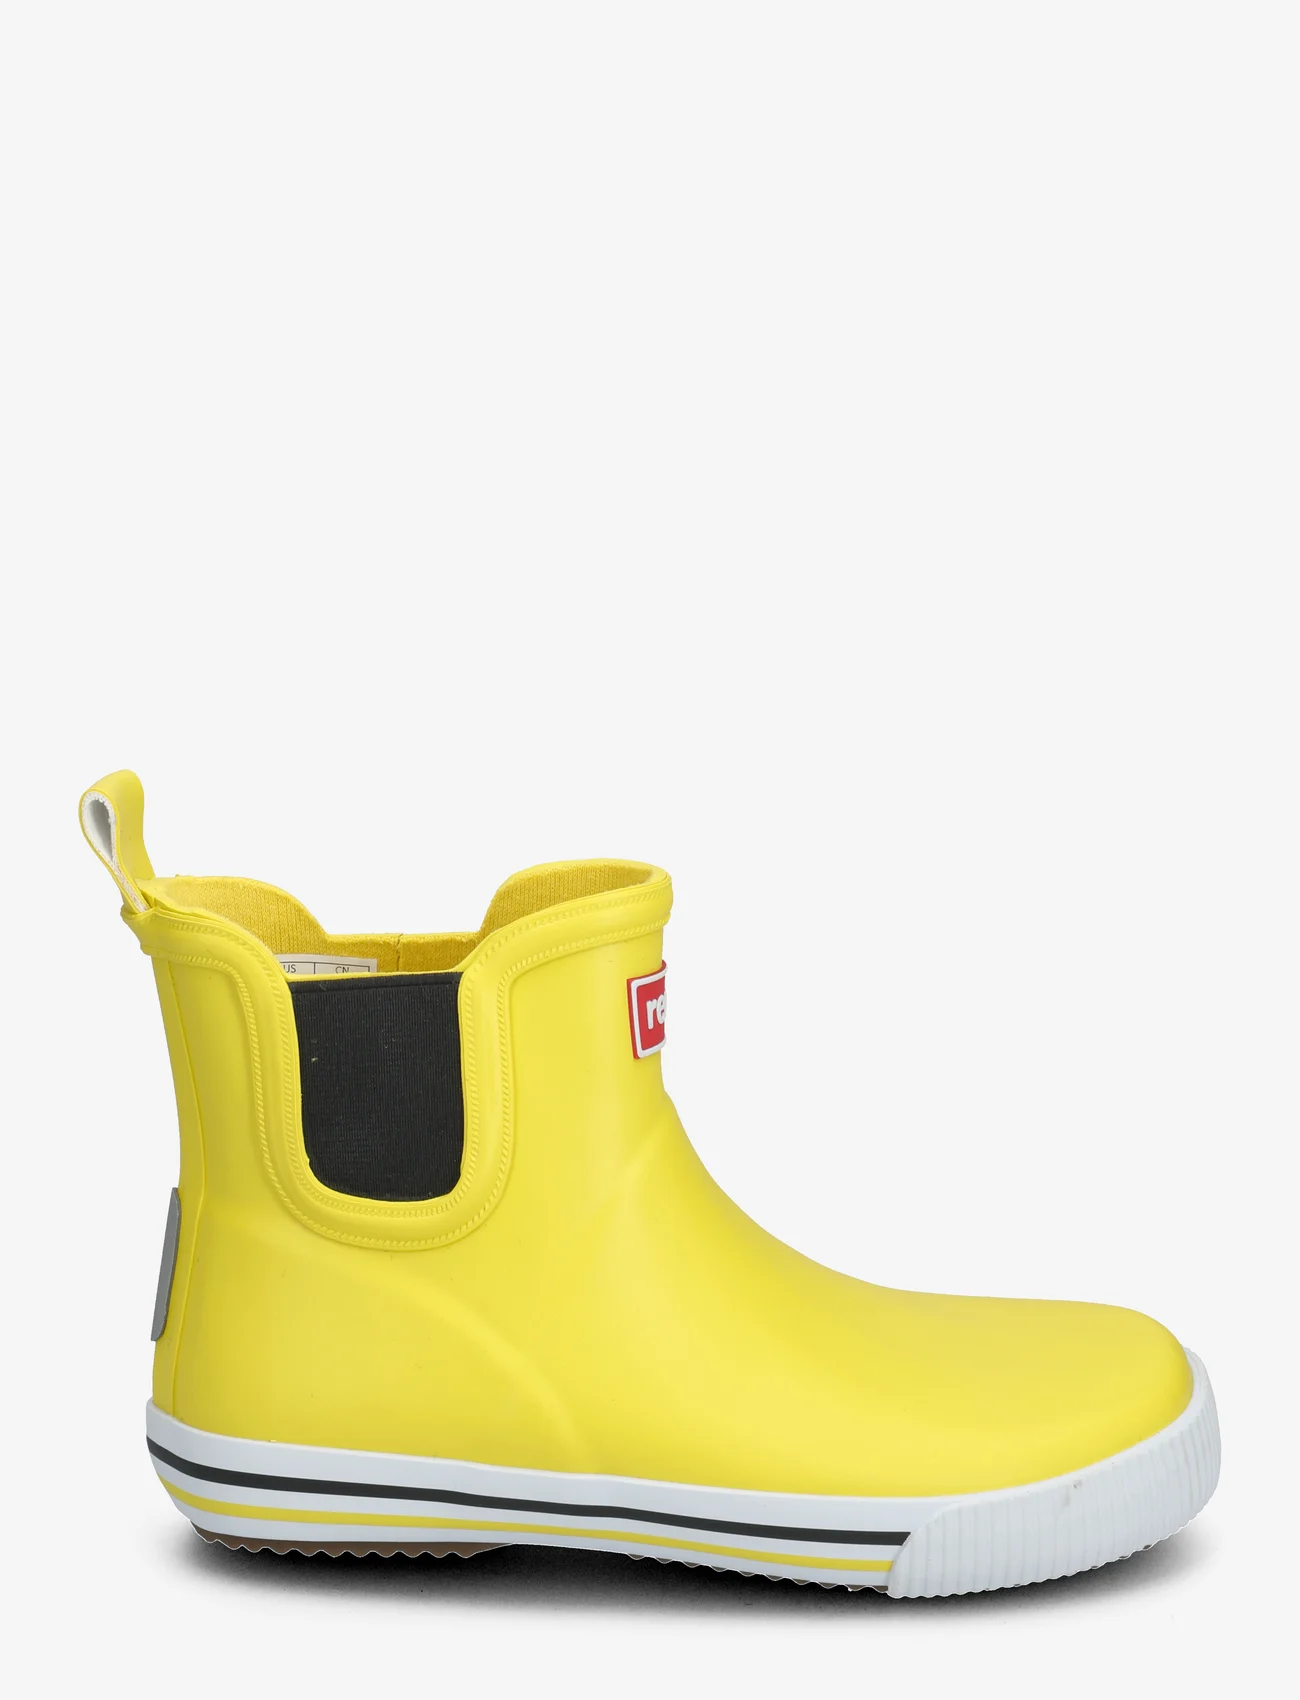 Reima - Rain boots, Ankles - ofodrade gummistövlar - yellow - 1